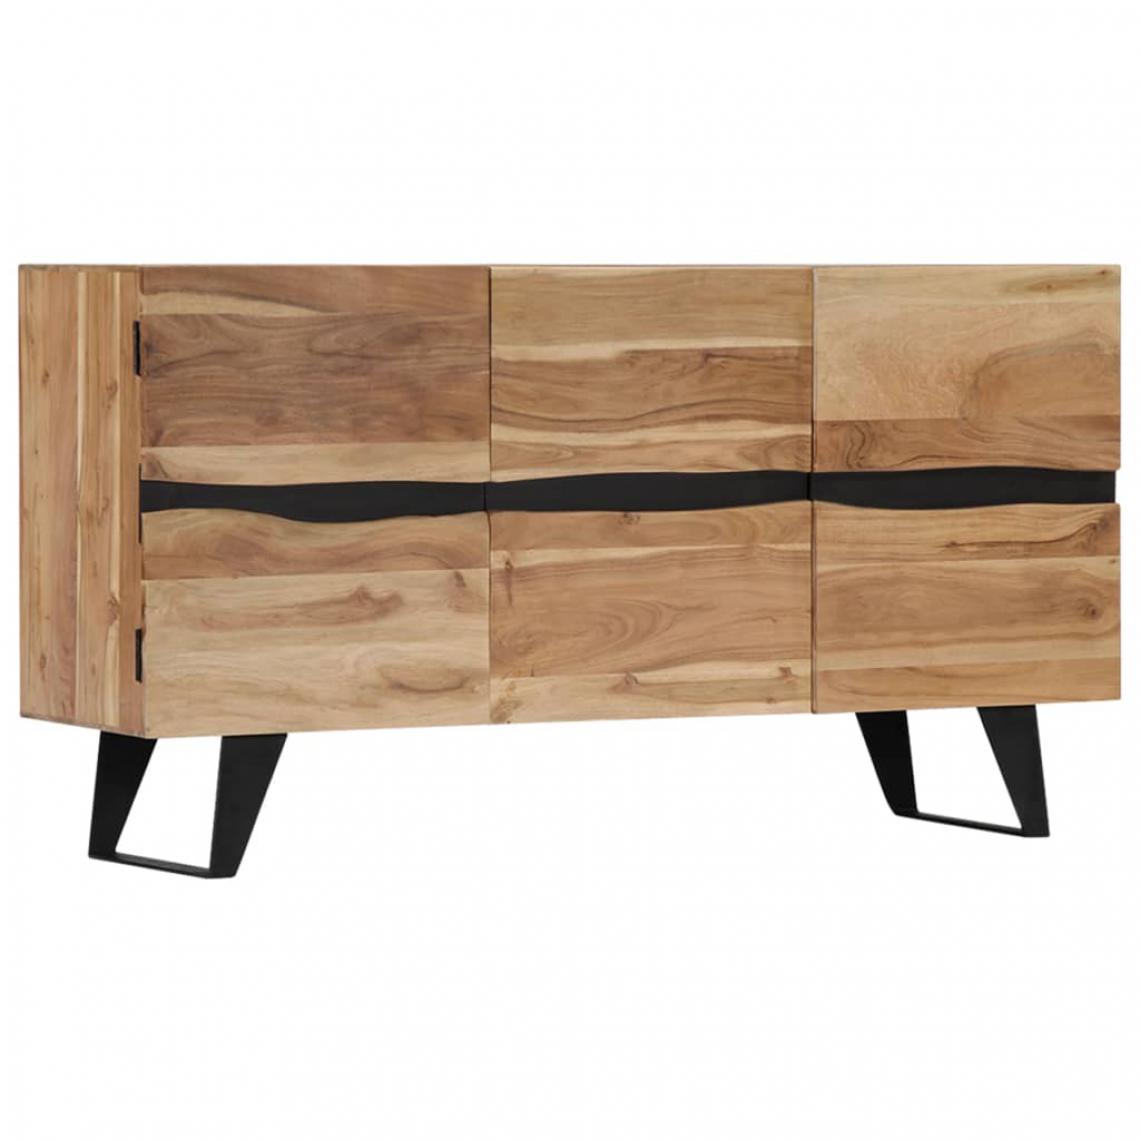 Helloshop26 - Buffet bahut armoire console meuble de rangement 150 cm bois d'acacia massif 4402090 - Consoles